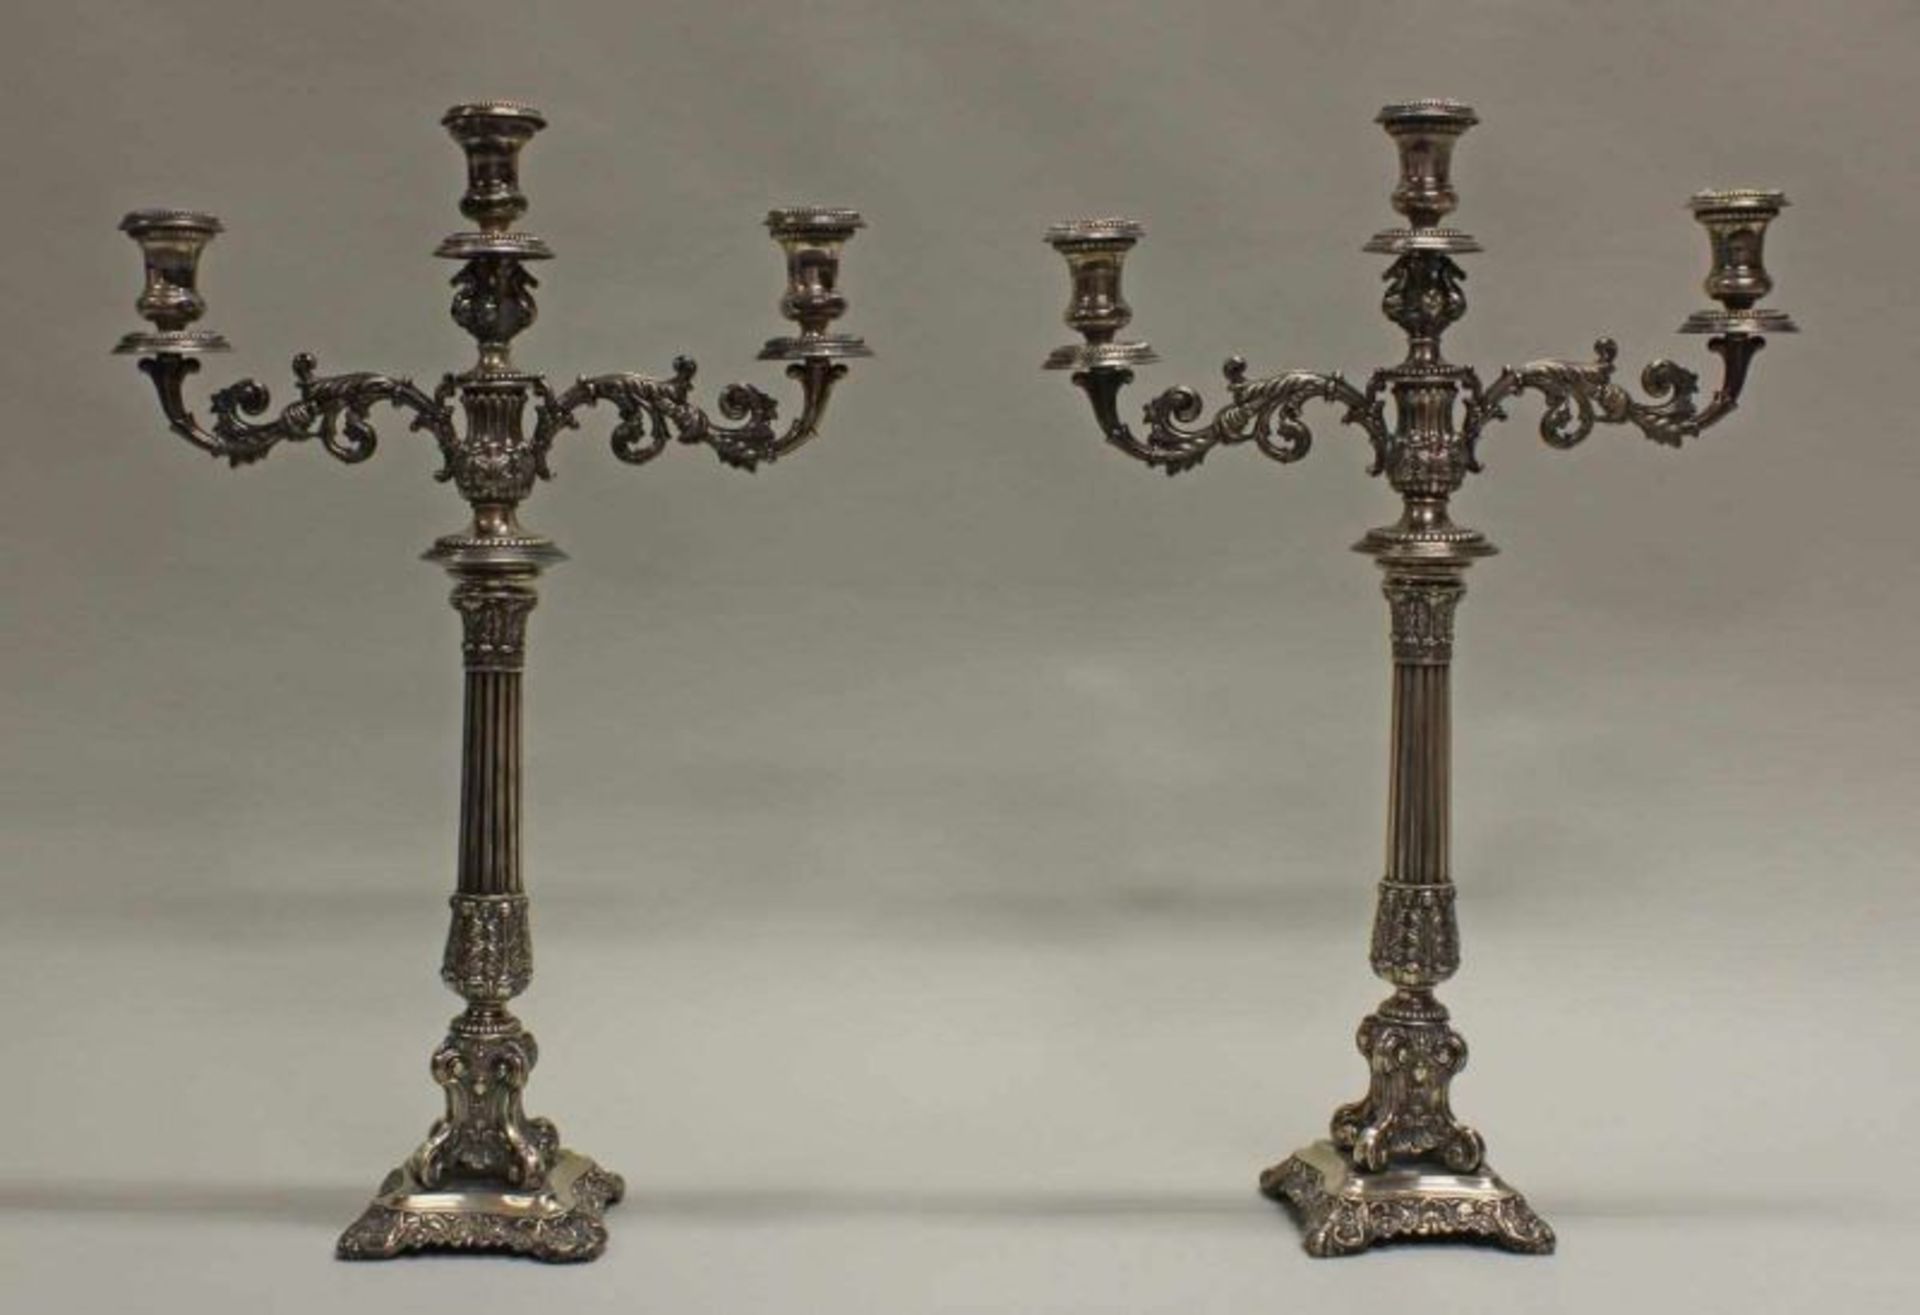 Paar Kerzenleuchter, Silber, ungemarkt, verziert mit Akanthus, Palmetten und Blüten, kannelierter